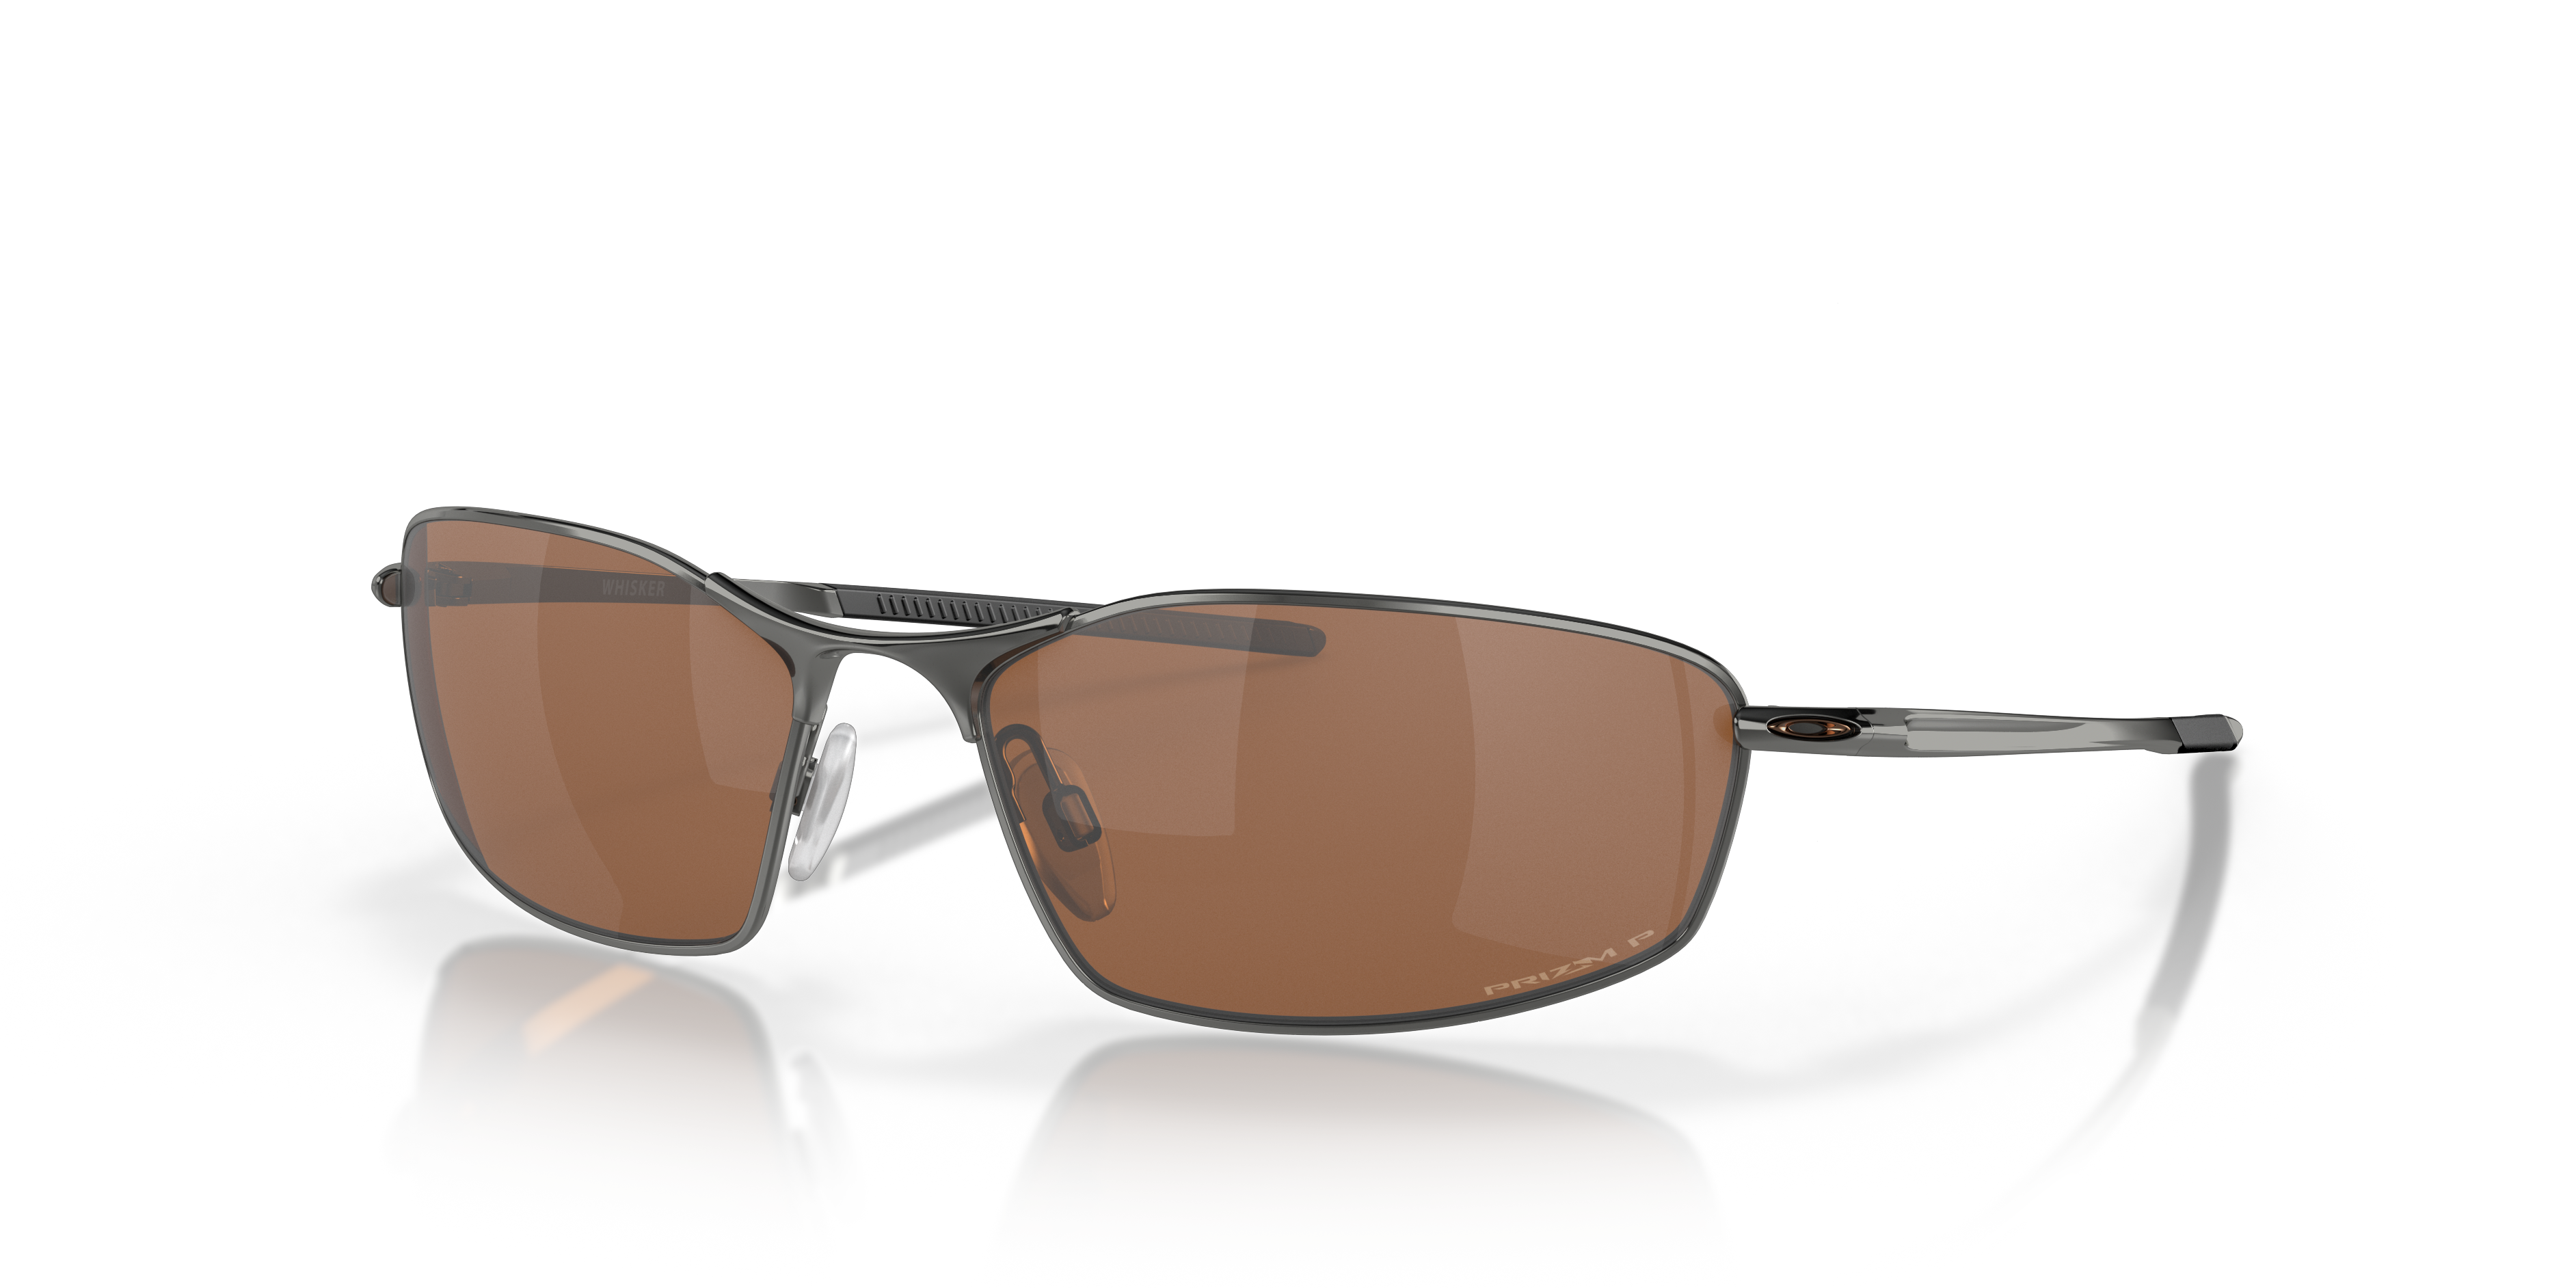 Oakley Men's Whisker® Sunglasses product image